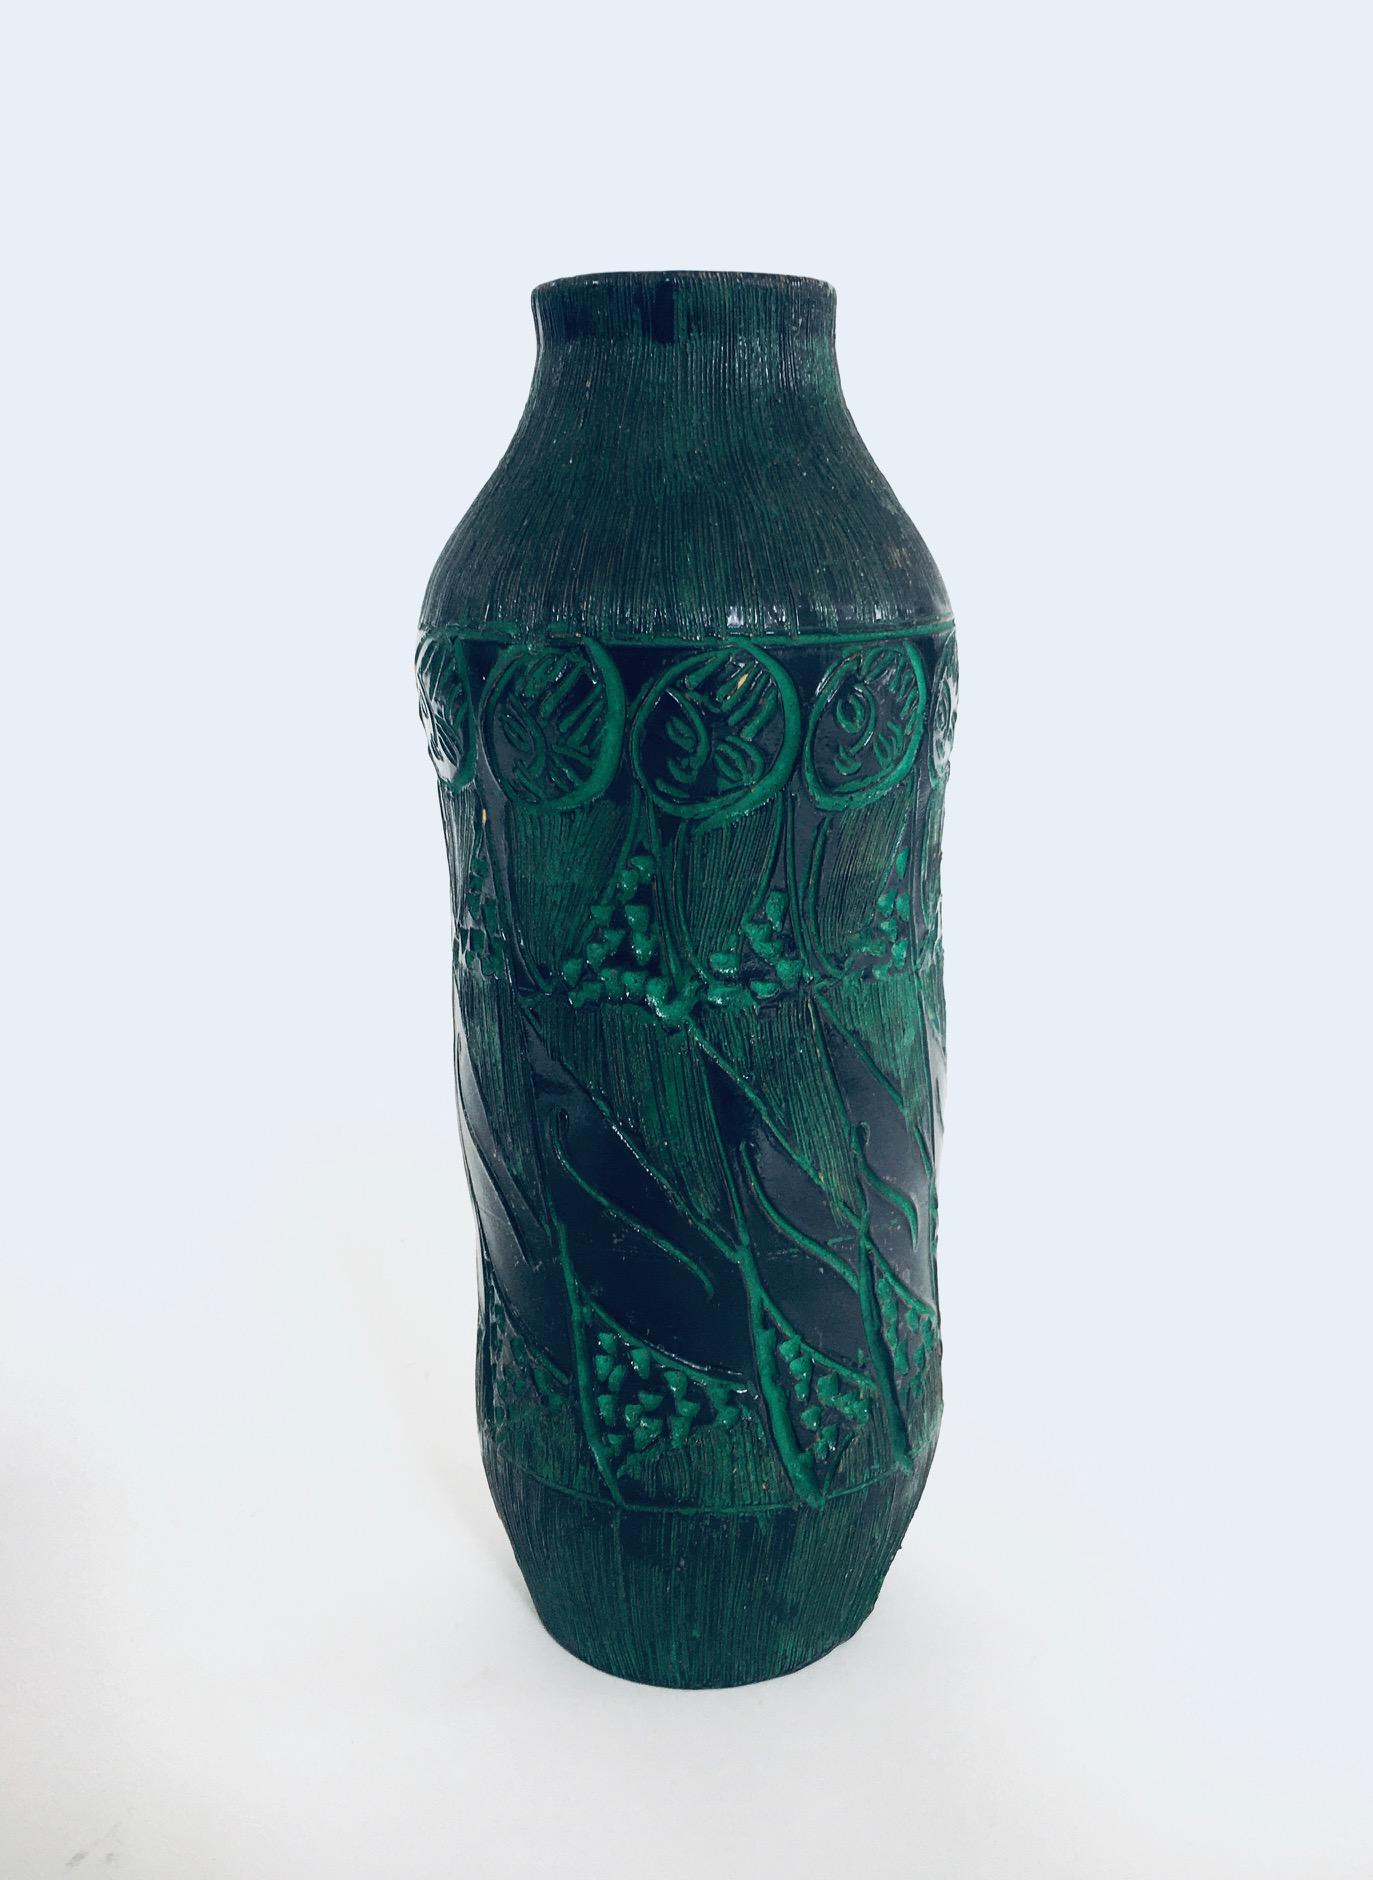 Vintage Art Pottery Studio Vase von Fratelli Fanciullacci. Hergestellt in Italien, 1960er Jahre. Signiert; Italien auf der Unterseite. Schwarz und grün geschnitzte Vase mit Frauenfiguren und Streifen. Eine seltene Vase und ein seltenes Modell. Dies